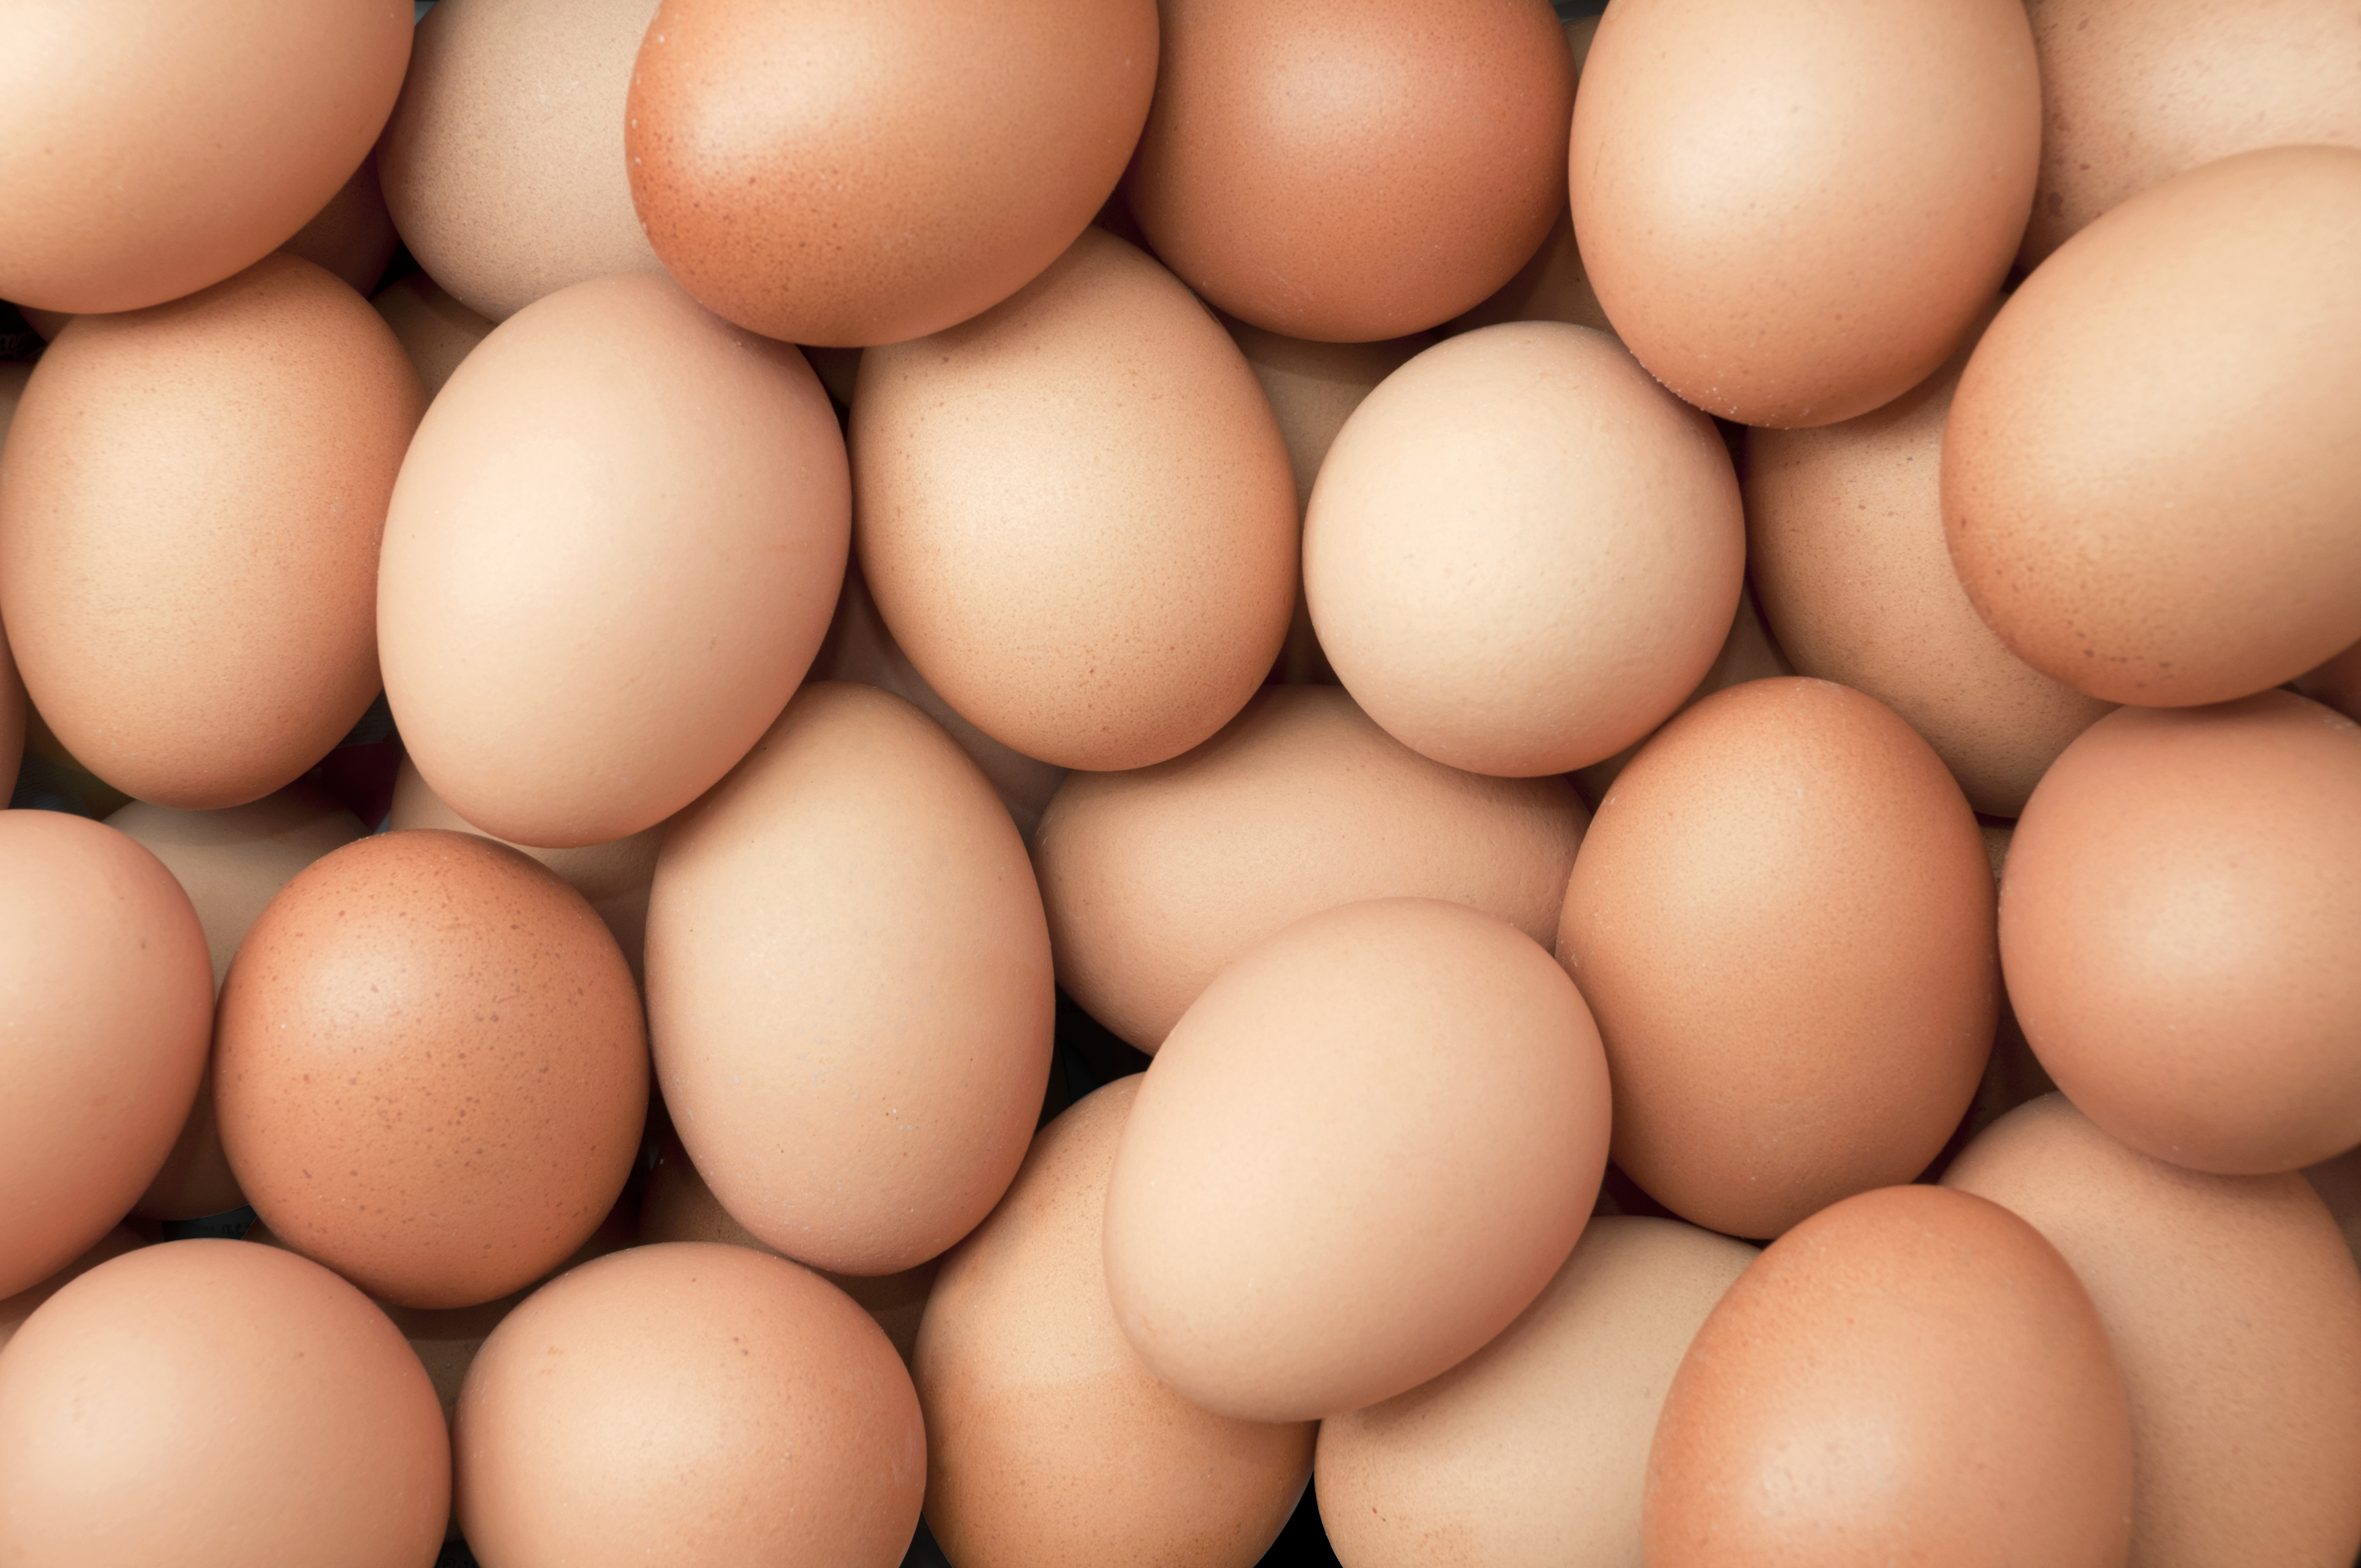 หมอ-นักวิชาการ แนะคนไทยสุขภาพดี กินไข่ได้วันละ 1 ฟอง ยืนยันมีคุณค่าทางโภชนาการสูง